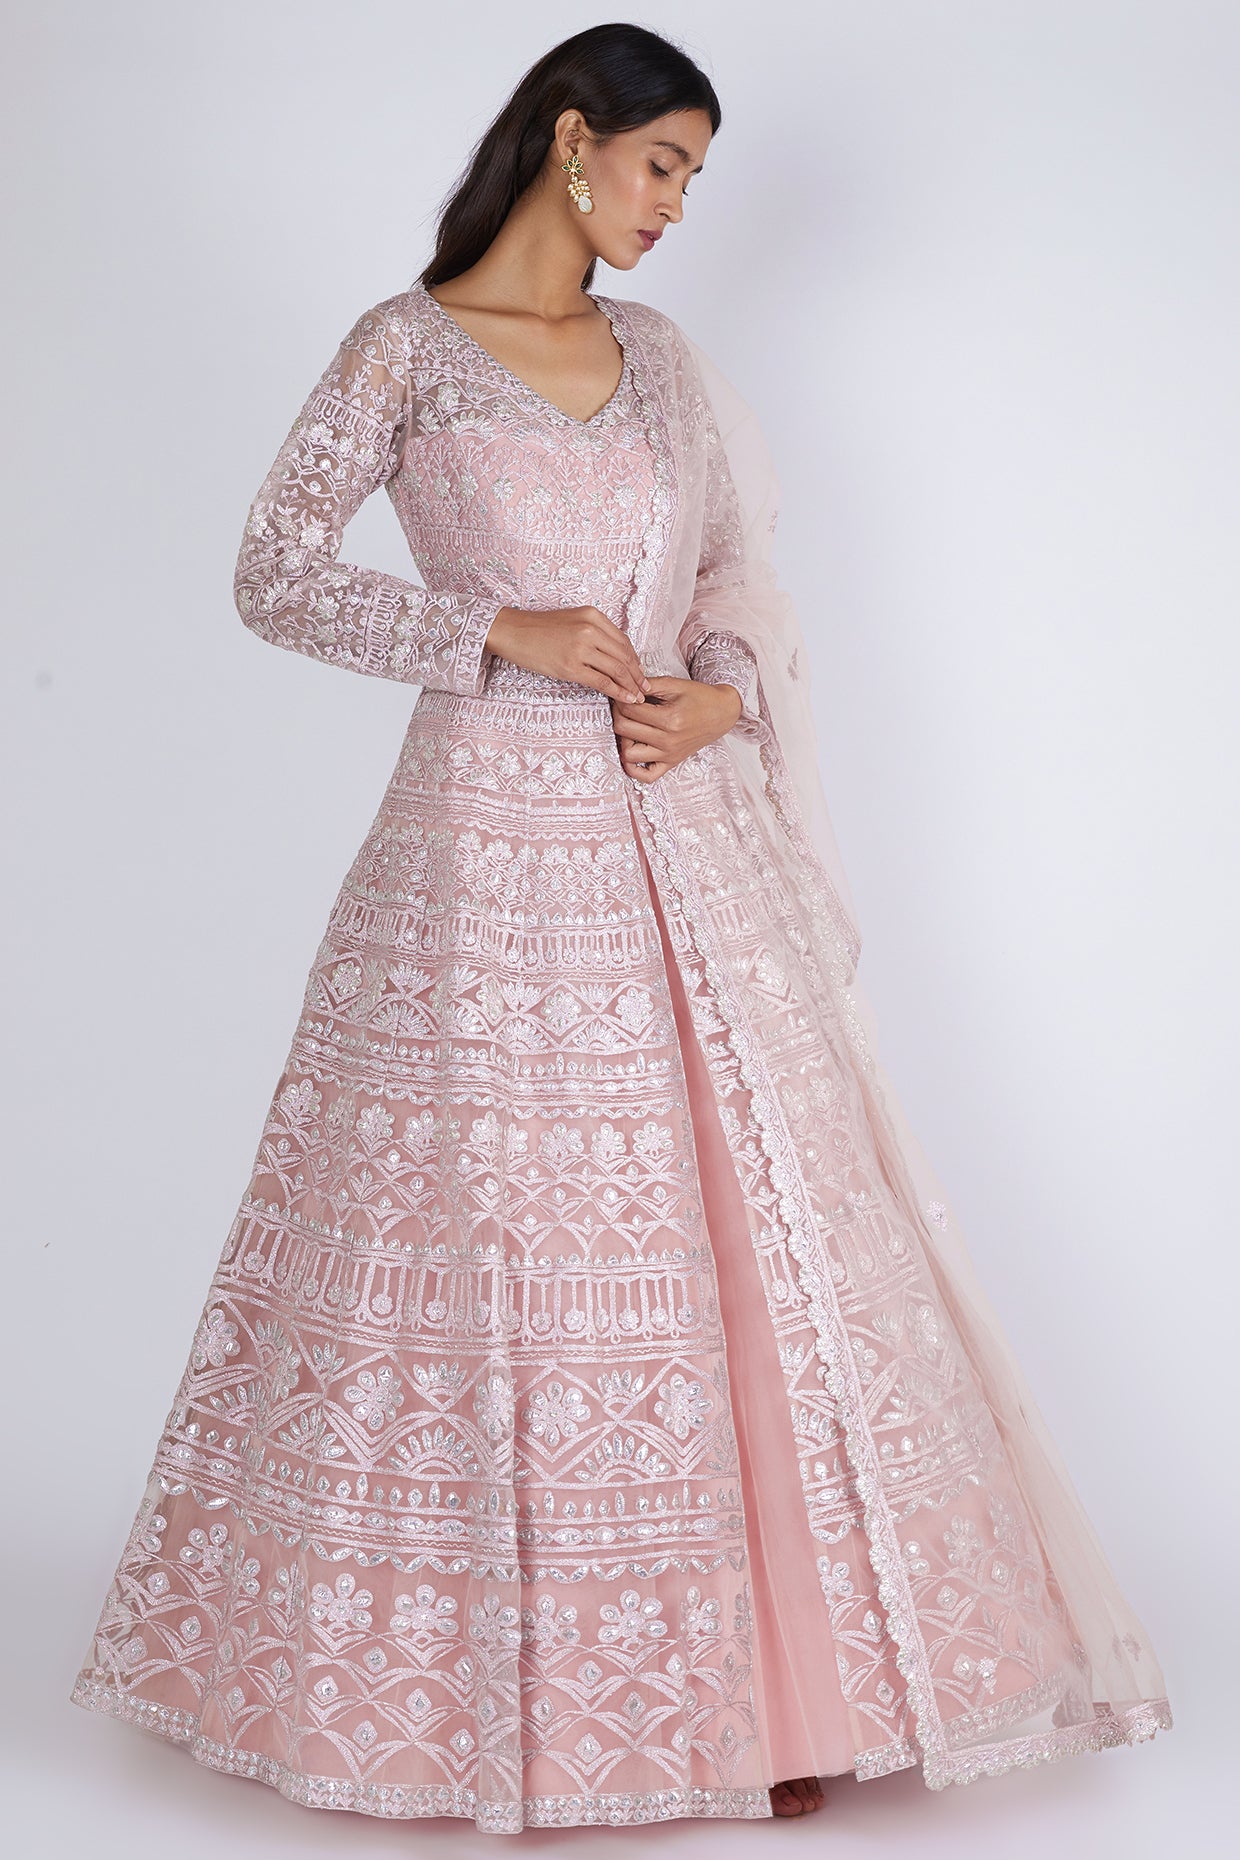 Buy Pink Foil Printed Net Lehanga Jacket Set Wedding Wear Online at Best  Price | Cbazaar